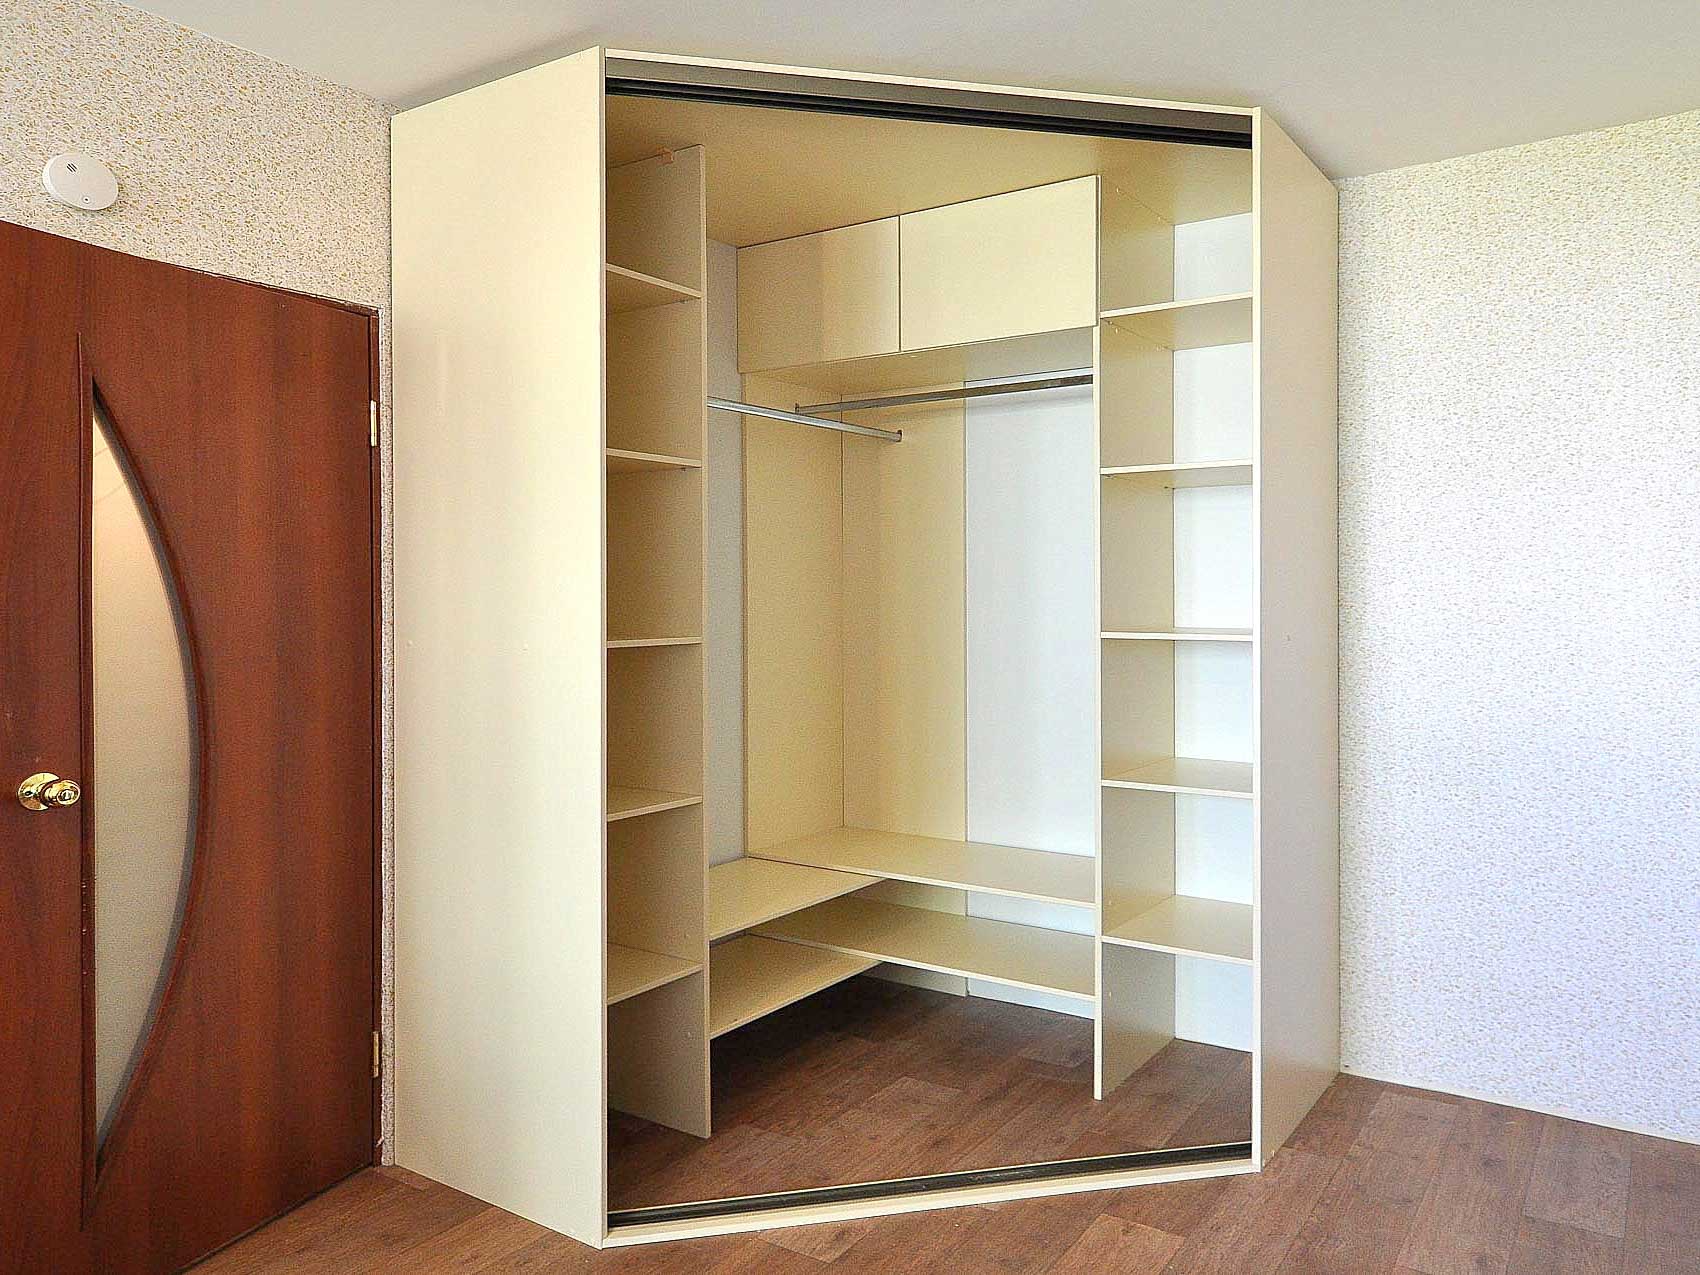 Угловая гардеробная — лучший вариант мебели для небольшой квартиры